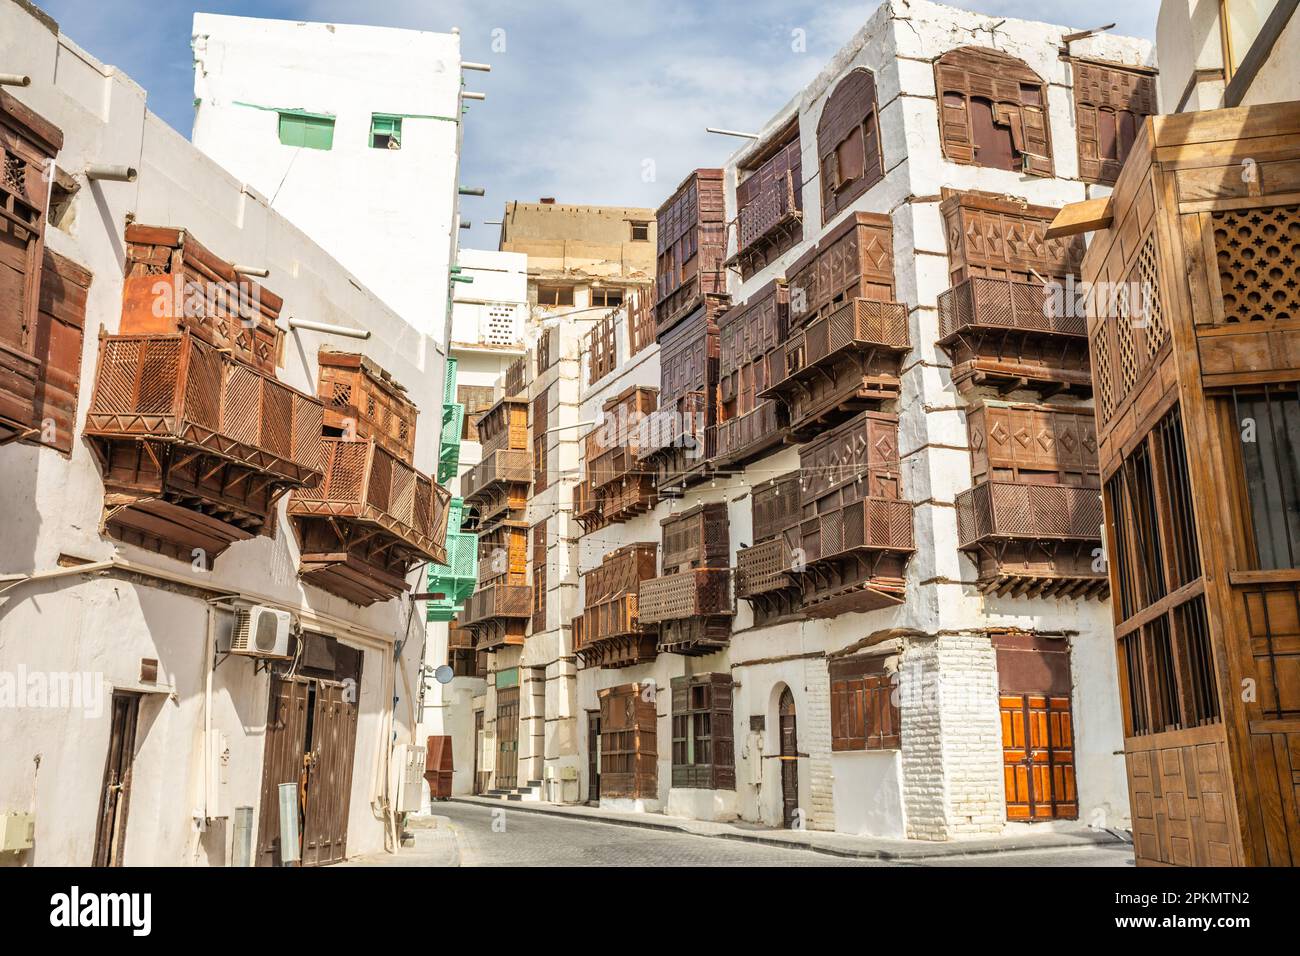 Al-Balad vecchia città con case musulmane tradizionali con finestre in legno e balconi, Jeddah, Saudita Arabia8 Foto Stock